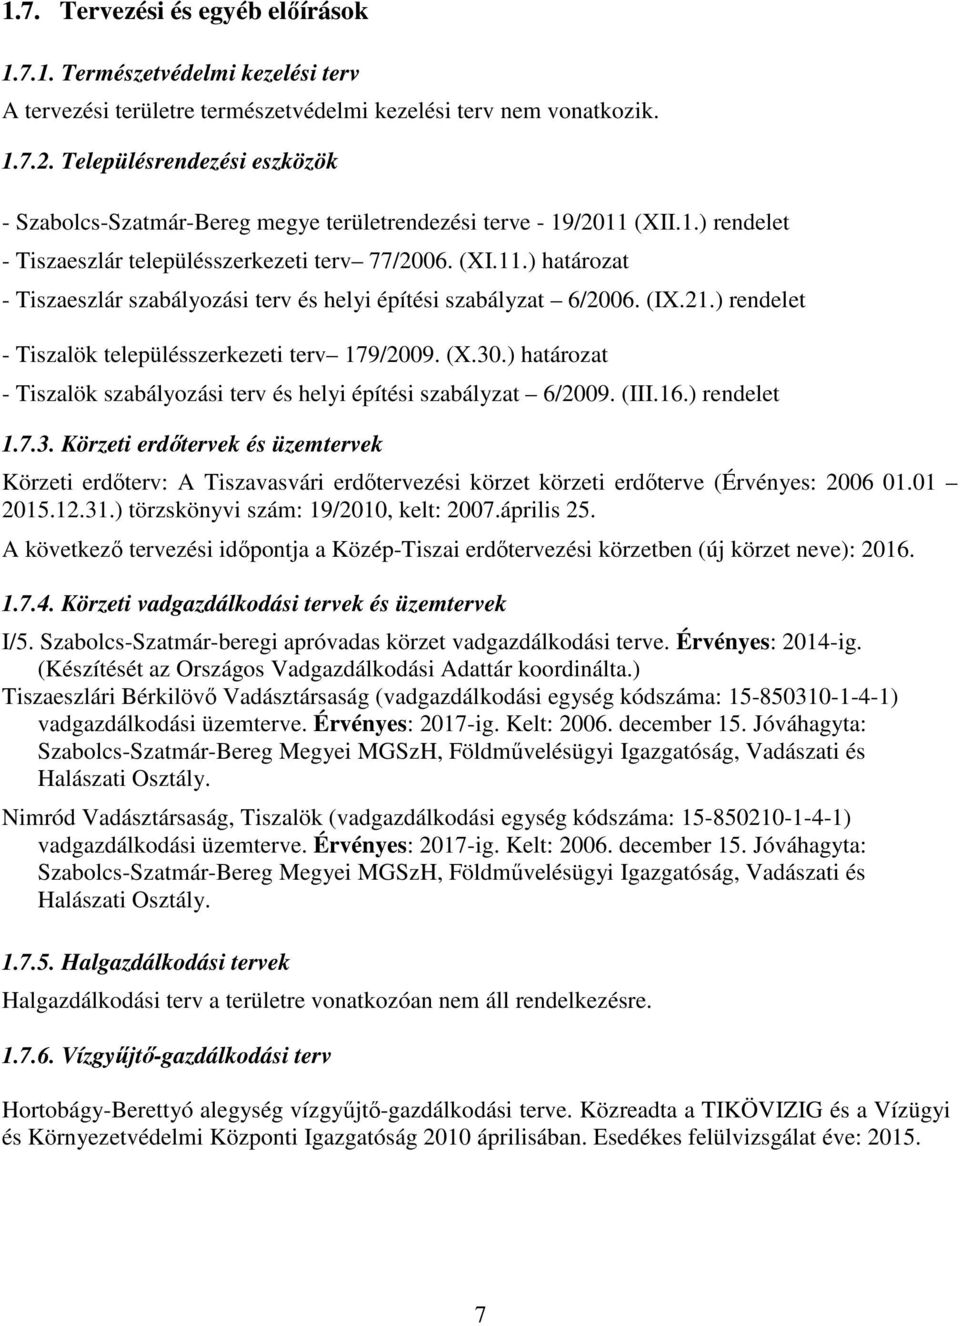 (IX.21.) rendelet - Tiszalök településszerkezeti terv 179/2009. (X.30.) határozat - Tiszalök szabályozási terv és helyi építési szabályzat 6/2009. (III.16.) rendelet 1.7.3. Körzeti erdőtervek és üzemtervek Körzeti erdőterv: A Tiszavasvári erdőtervezési körzet körzeti erdőterve (Érvényes: 2006 01.